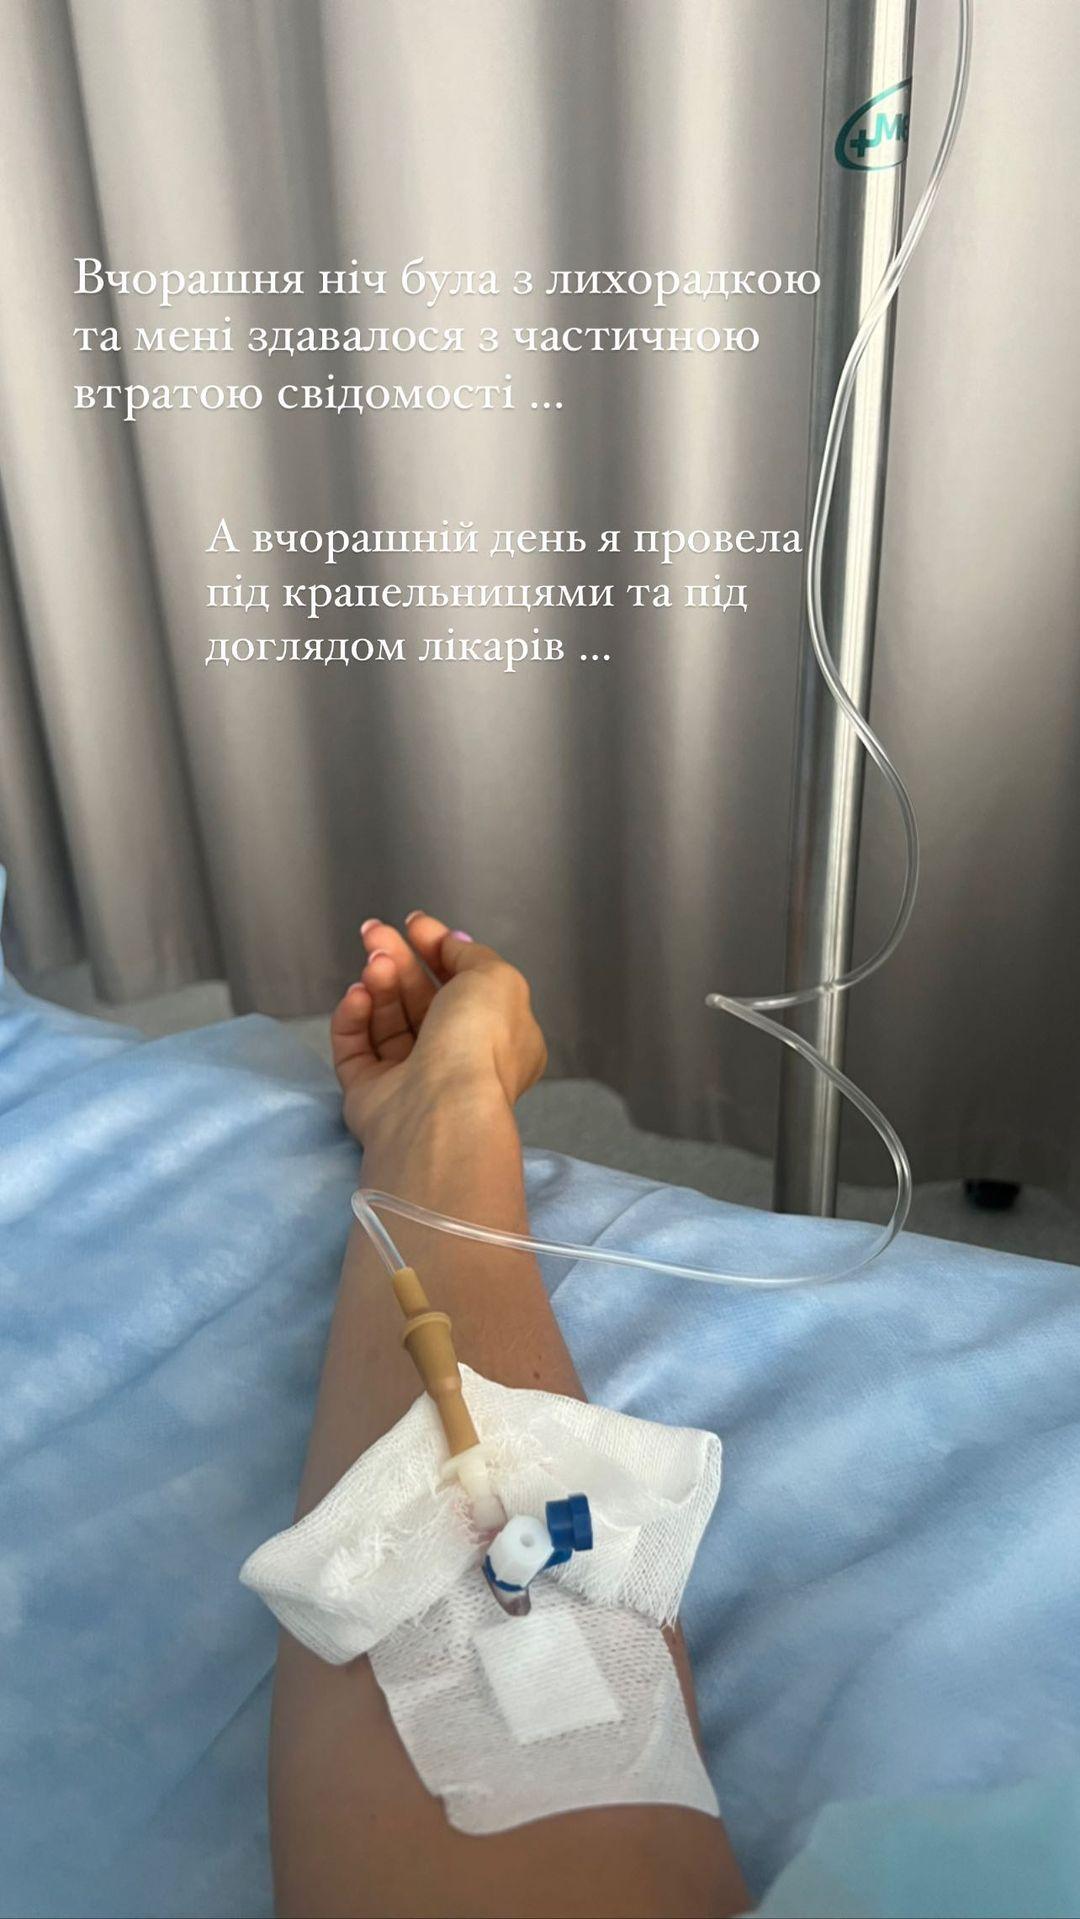 Мішина потрапила до лікарні / instagram.com/misha.k.ua